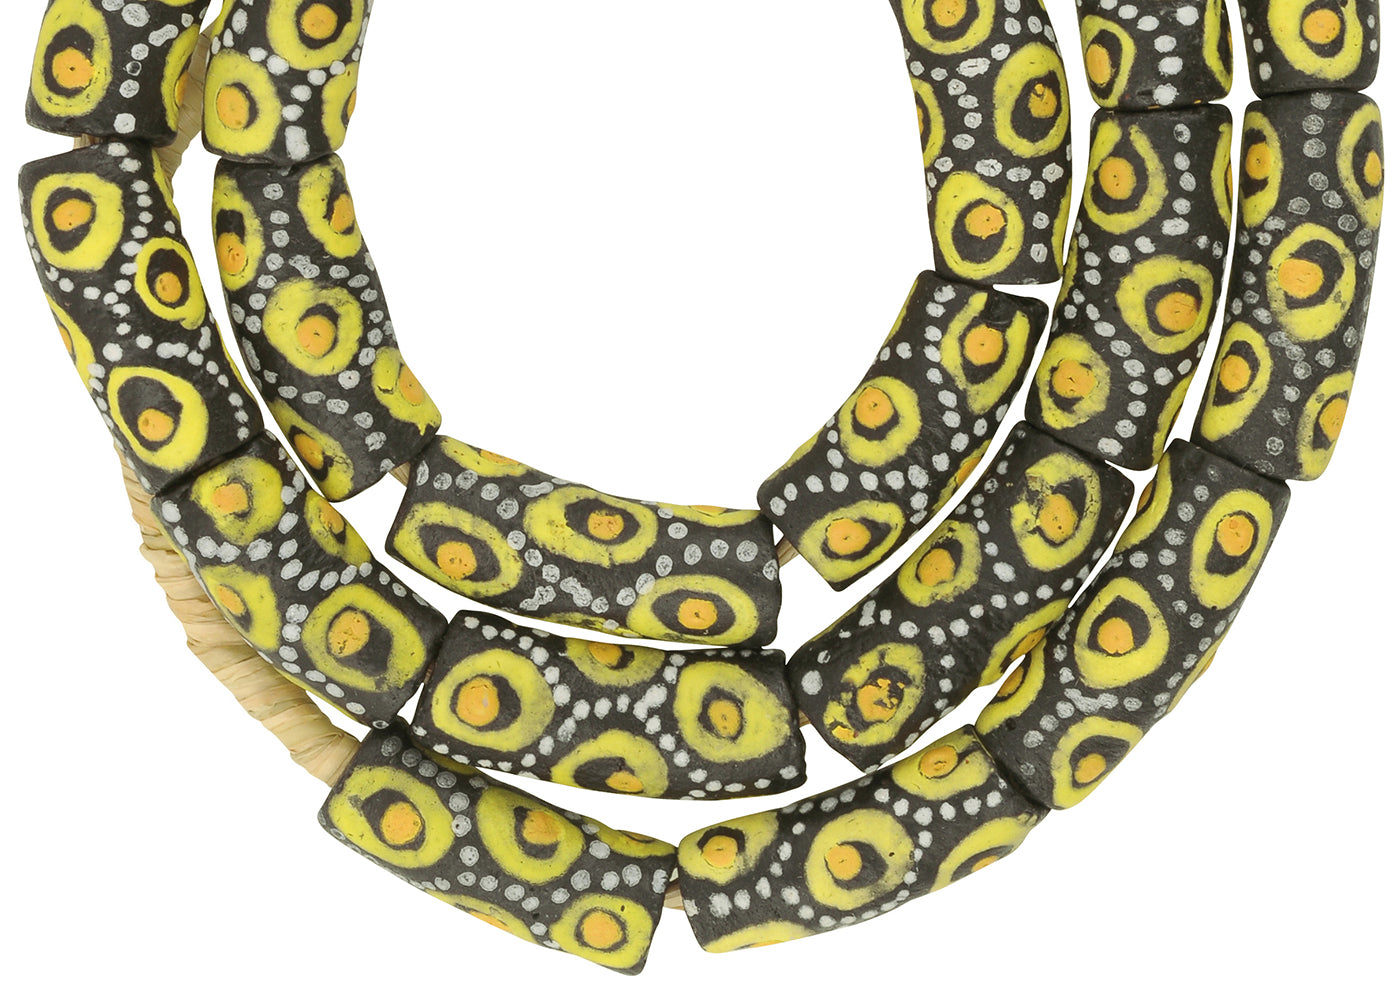 Krobo Beads recyceltes Glaspulver Afrikanische Halskette Ghana handgefertigt